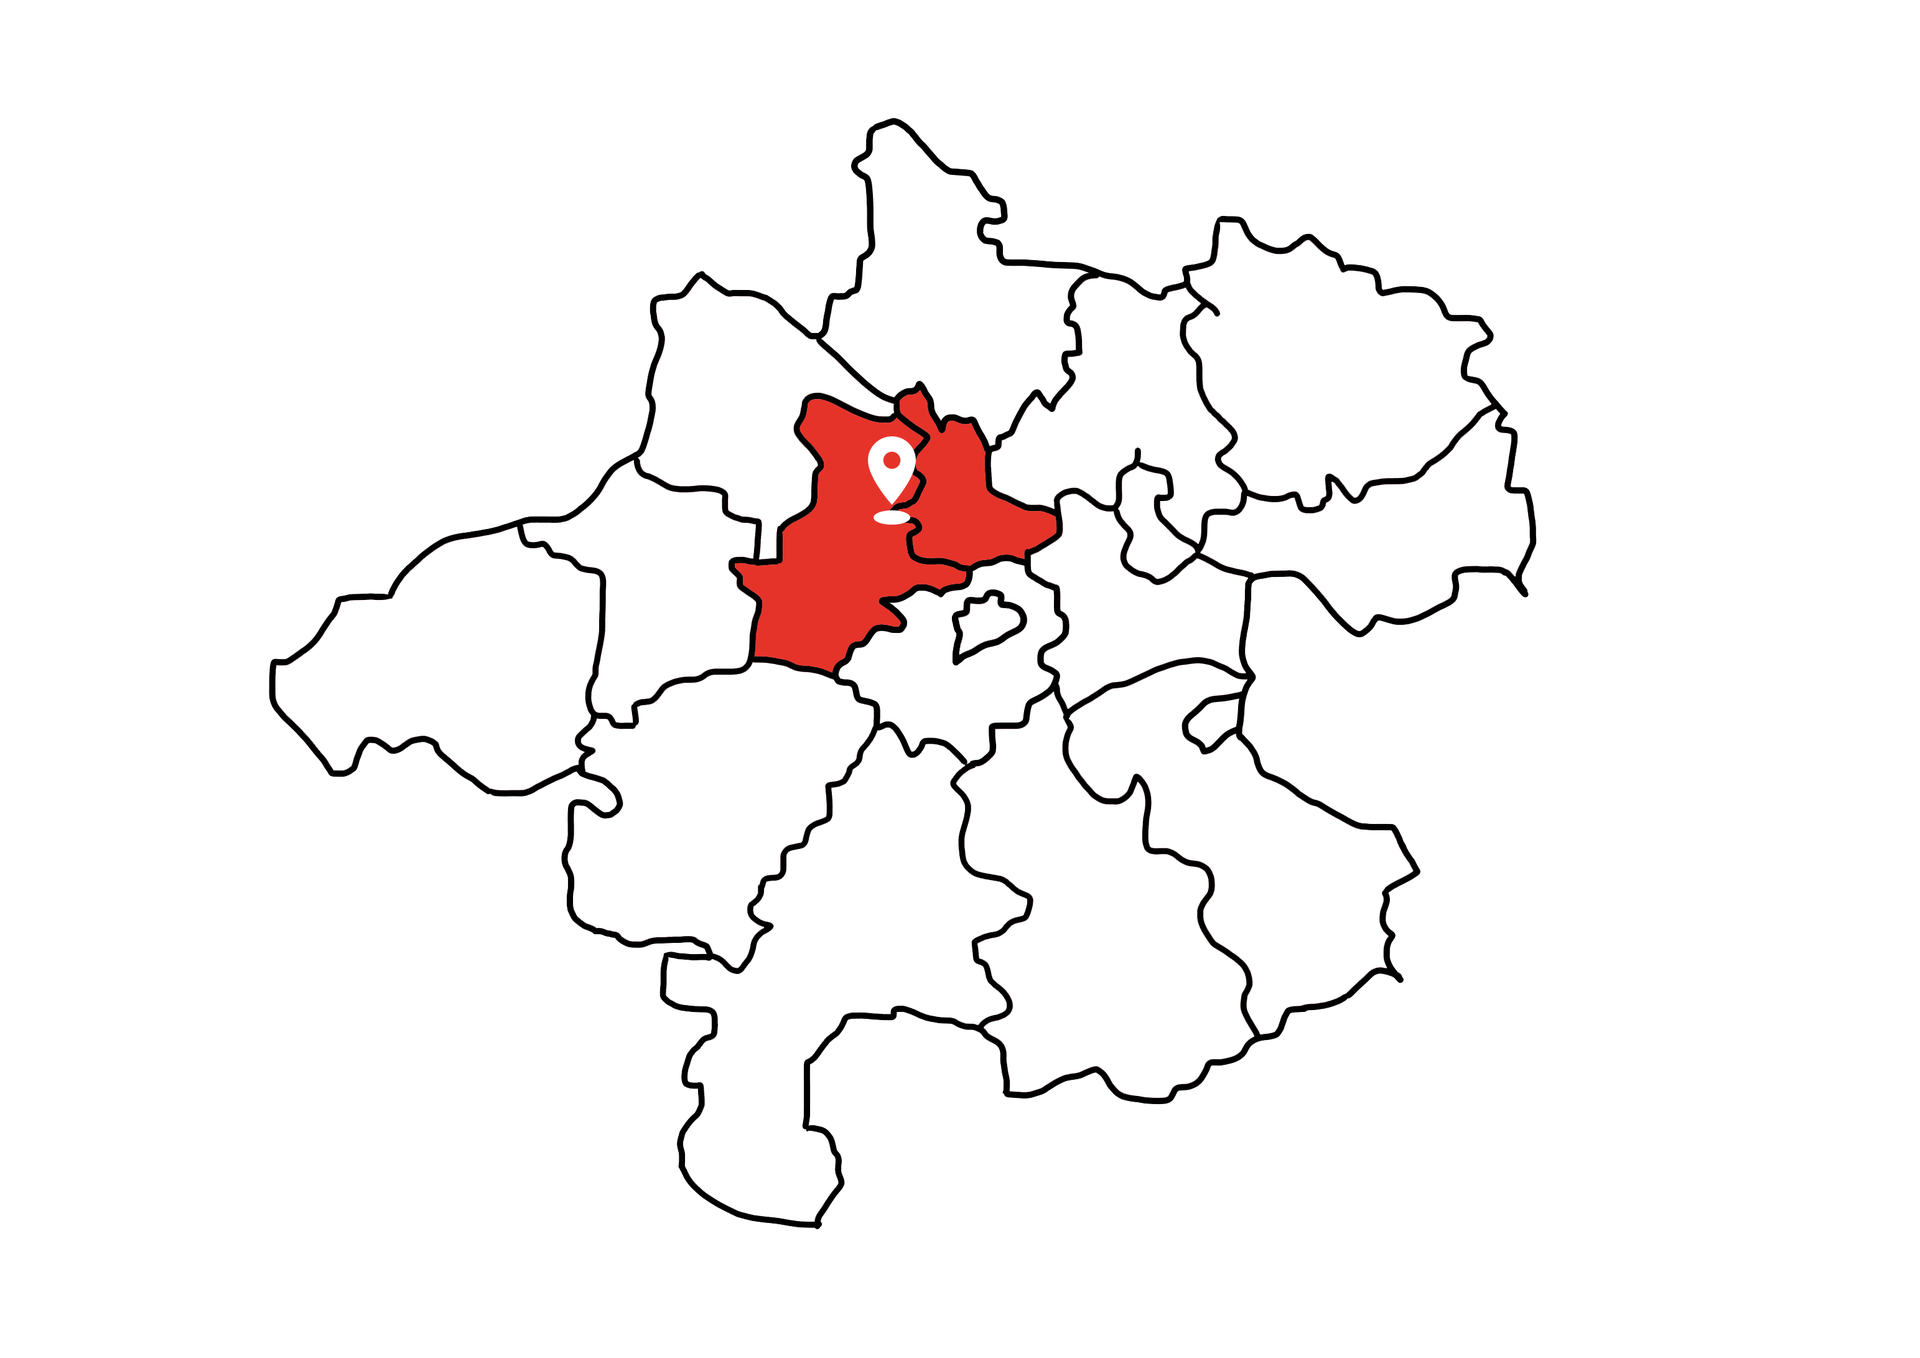 Eine Landkarte die Oberösterreich zeigt. Die Bezirke Grieskirchen und Eferding sind rot markiert. Die restlichen Bezirke sind weiß.